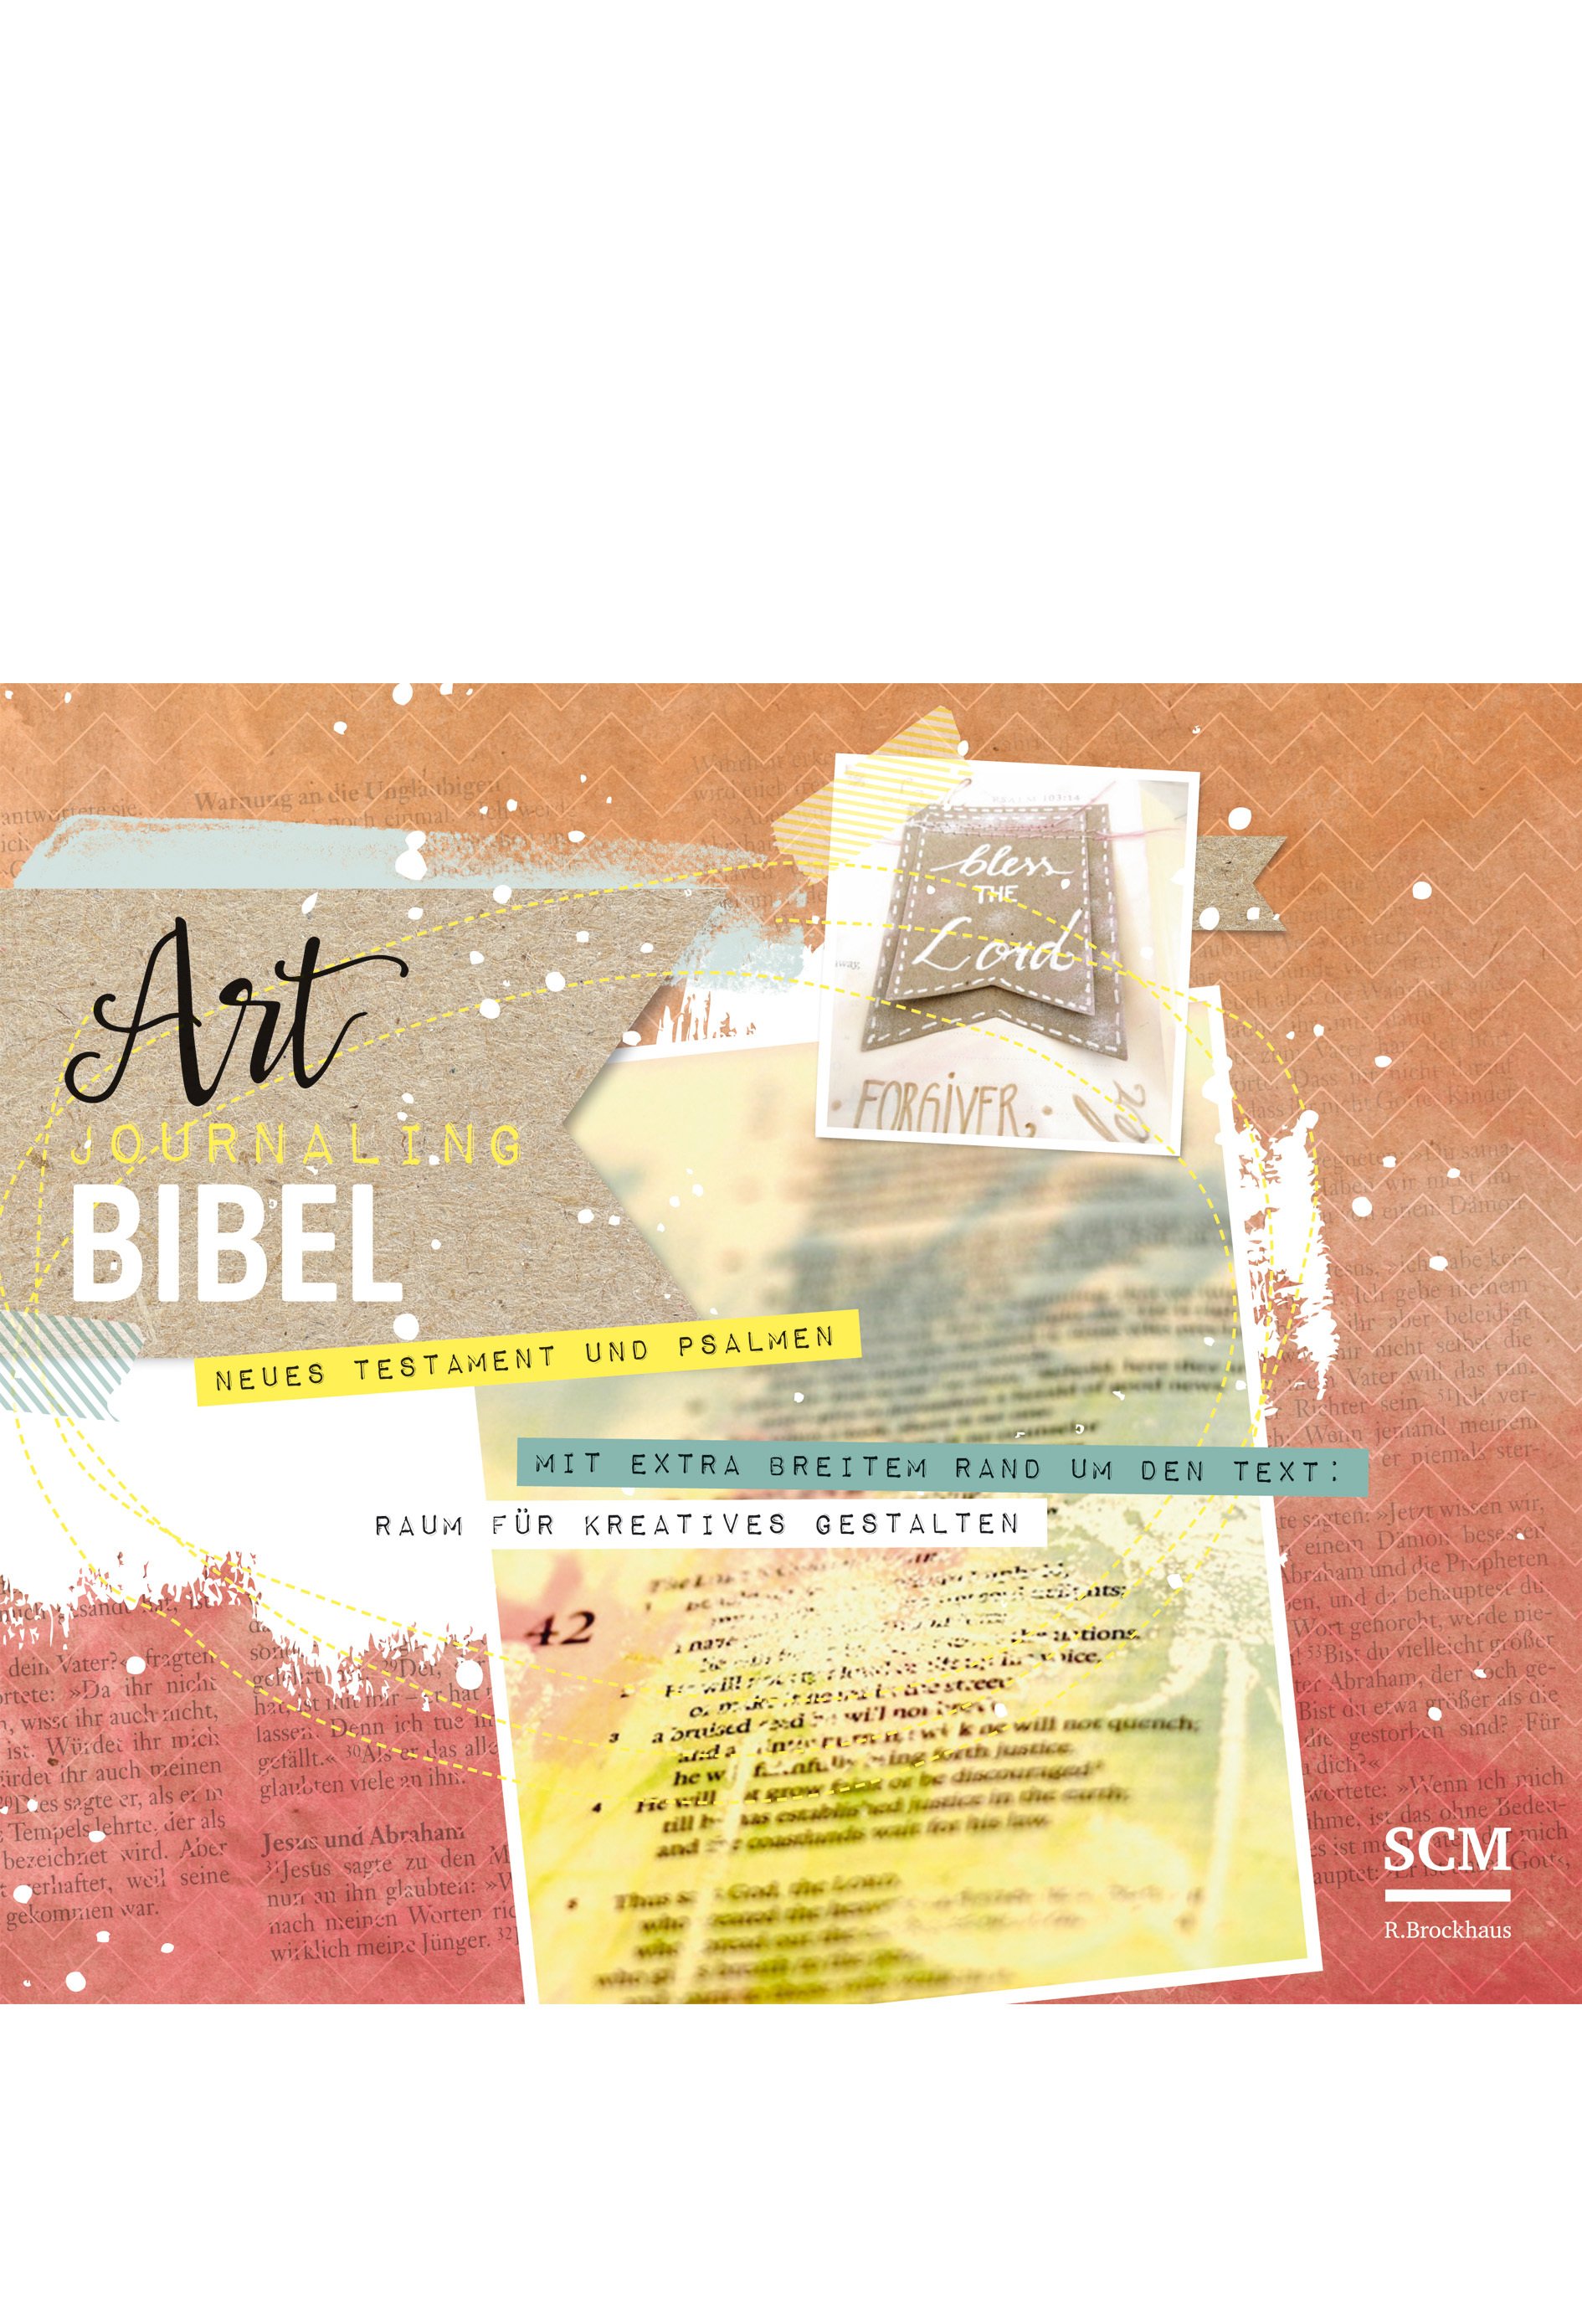 Die Bibel - Neues Leben, Art Journaling: Neues Testament und Psalmen